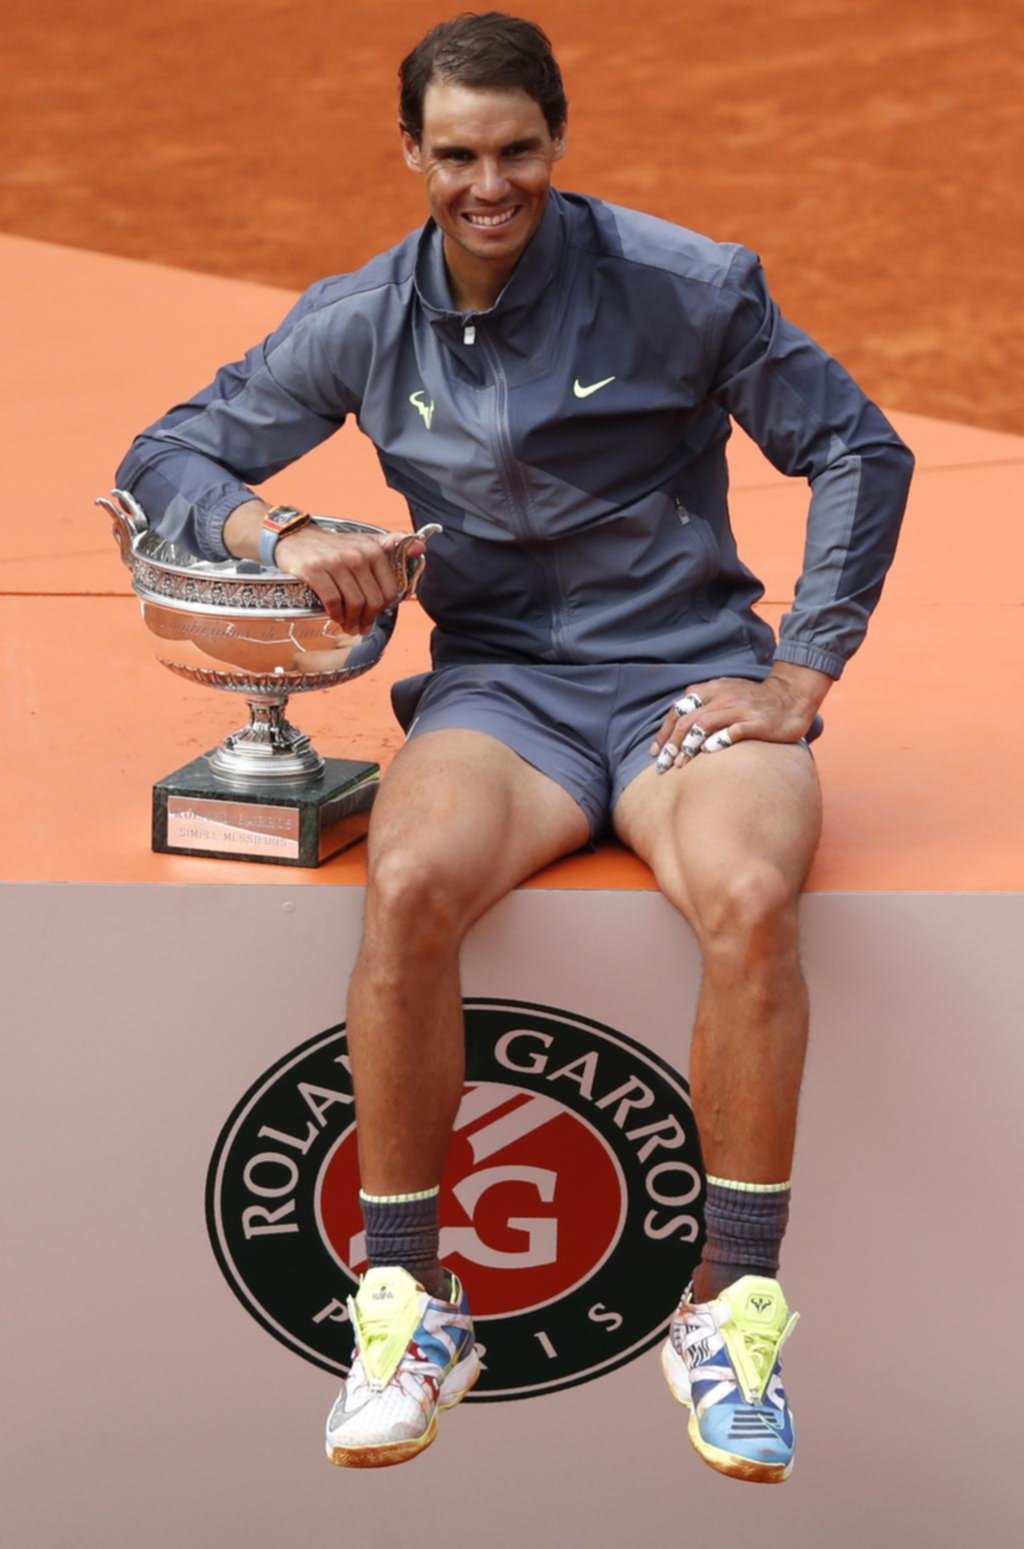 Un Nadal insaciable bate récords con una nueva conquista en Roland Garros